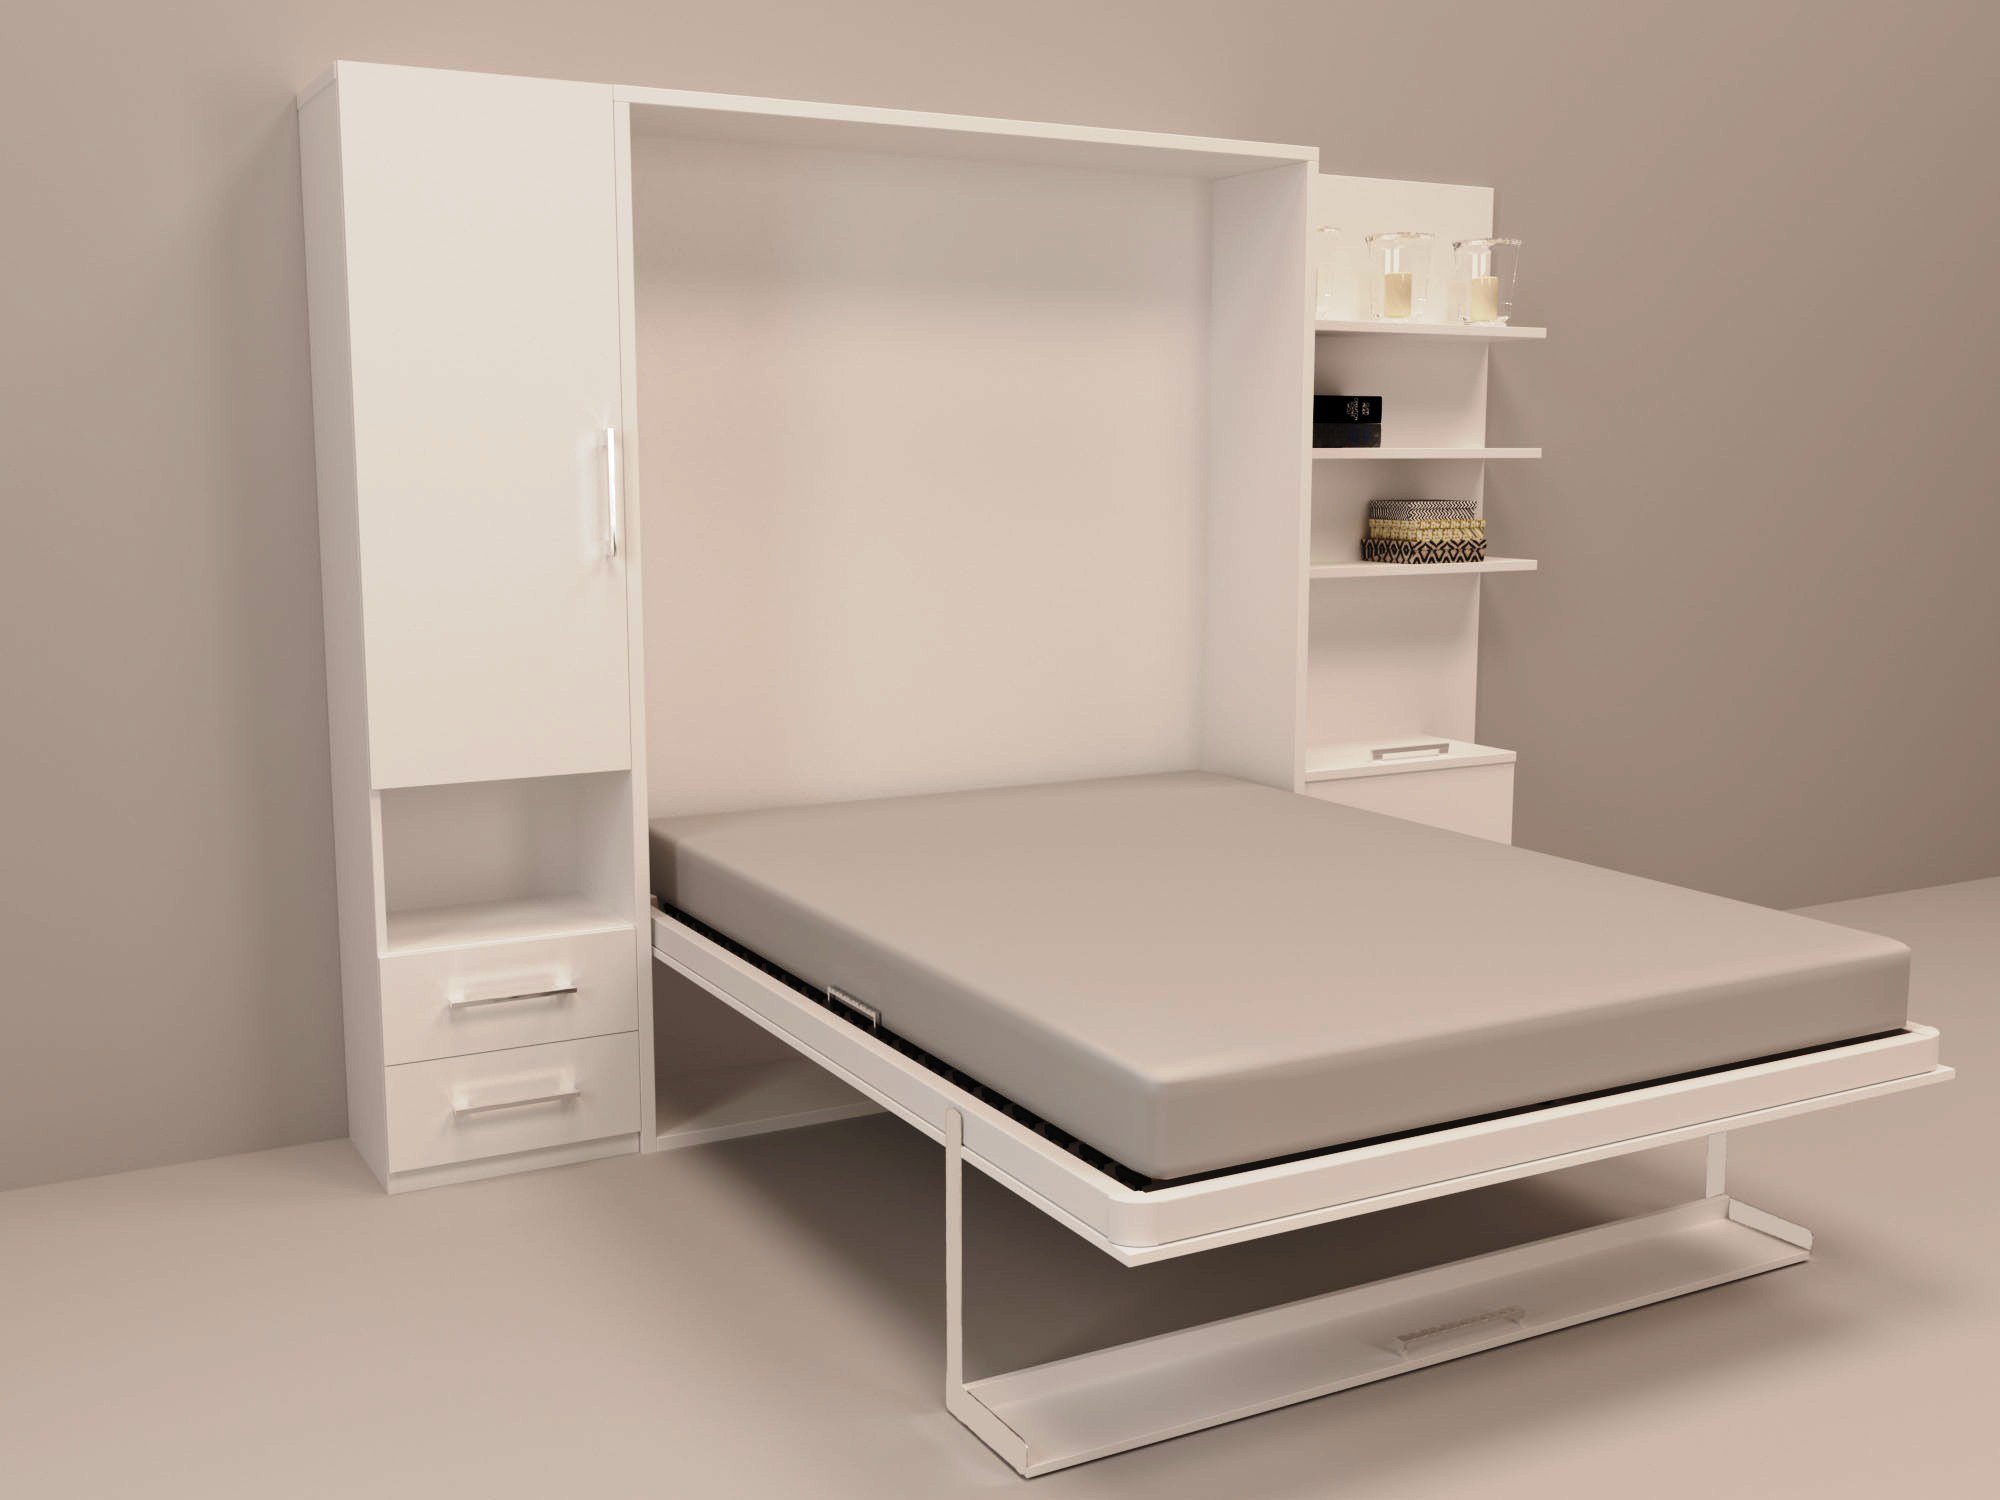 Кровати шкафы трансформеры екатеринбург. Кровать смарт 1. Кровать-трансформер смарт 1 к. Откидная кровать Smart k 1400. Смарти кровать трансформер.